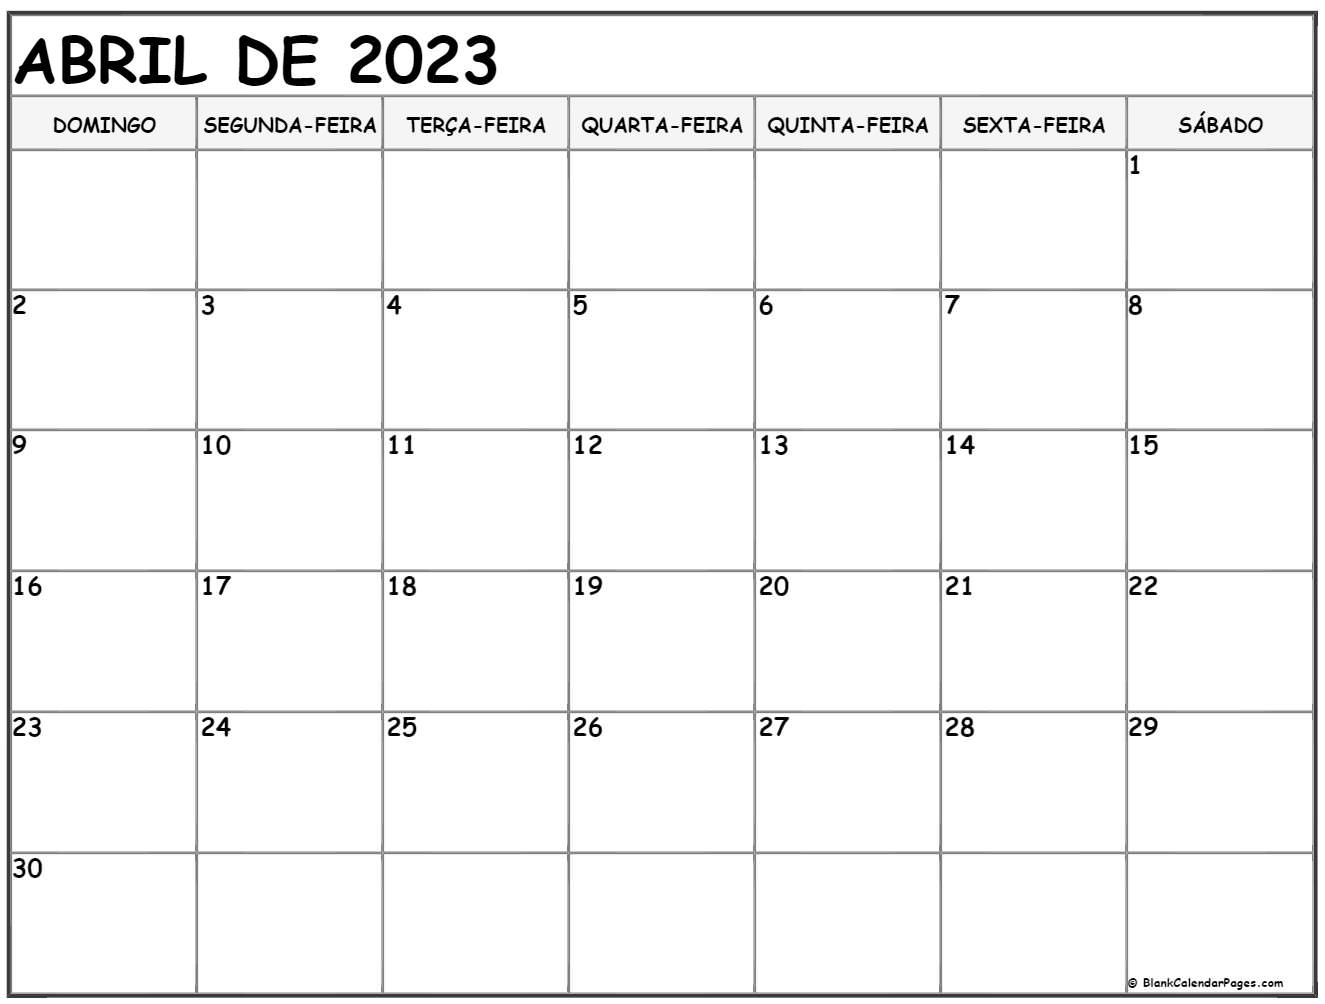 Abril De 2023 Calendario Gr tis Em Portugu s Calendario Abril